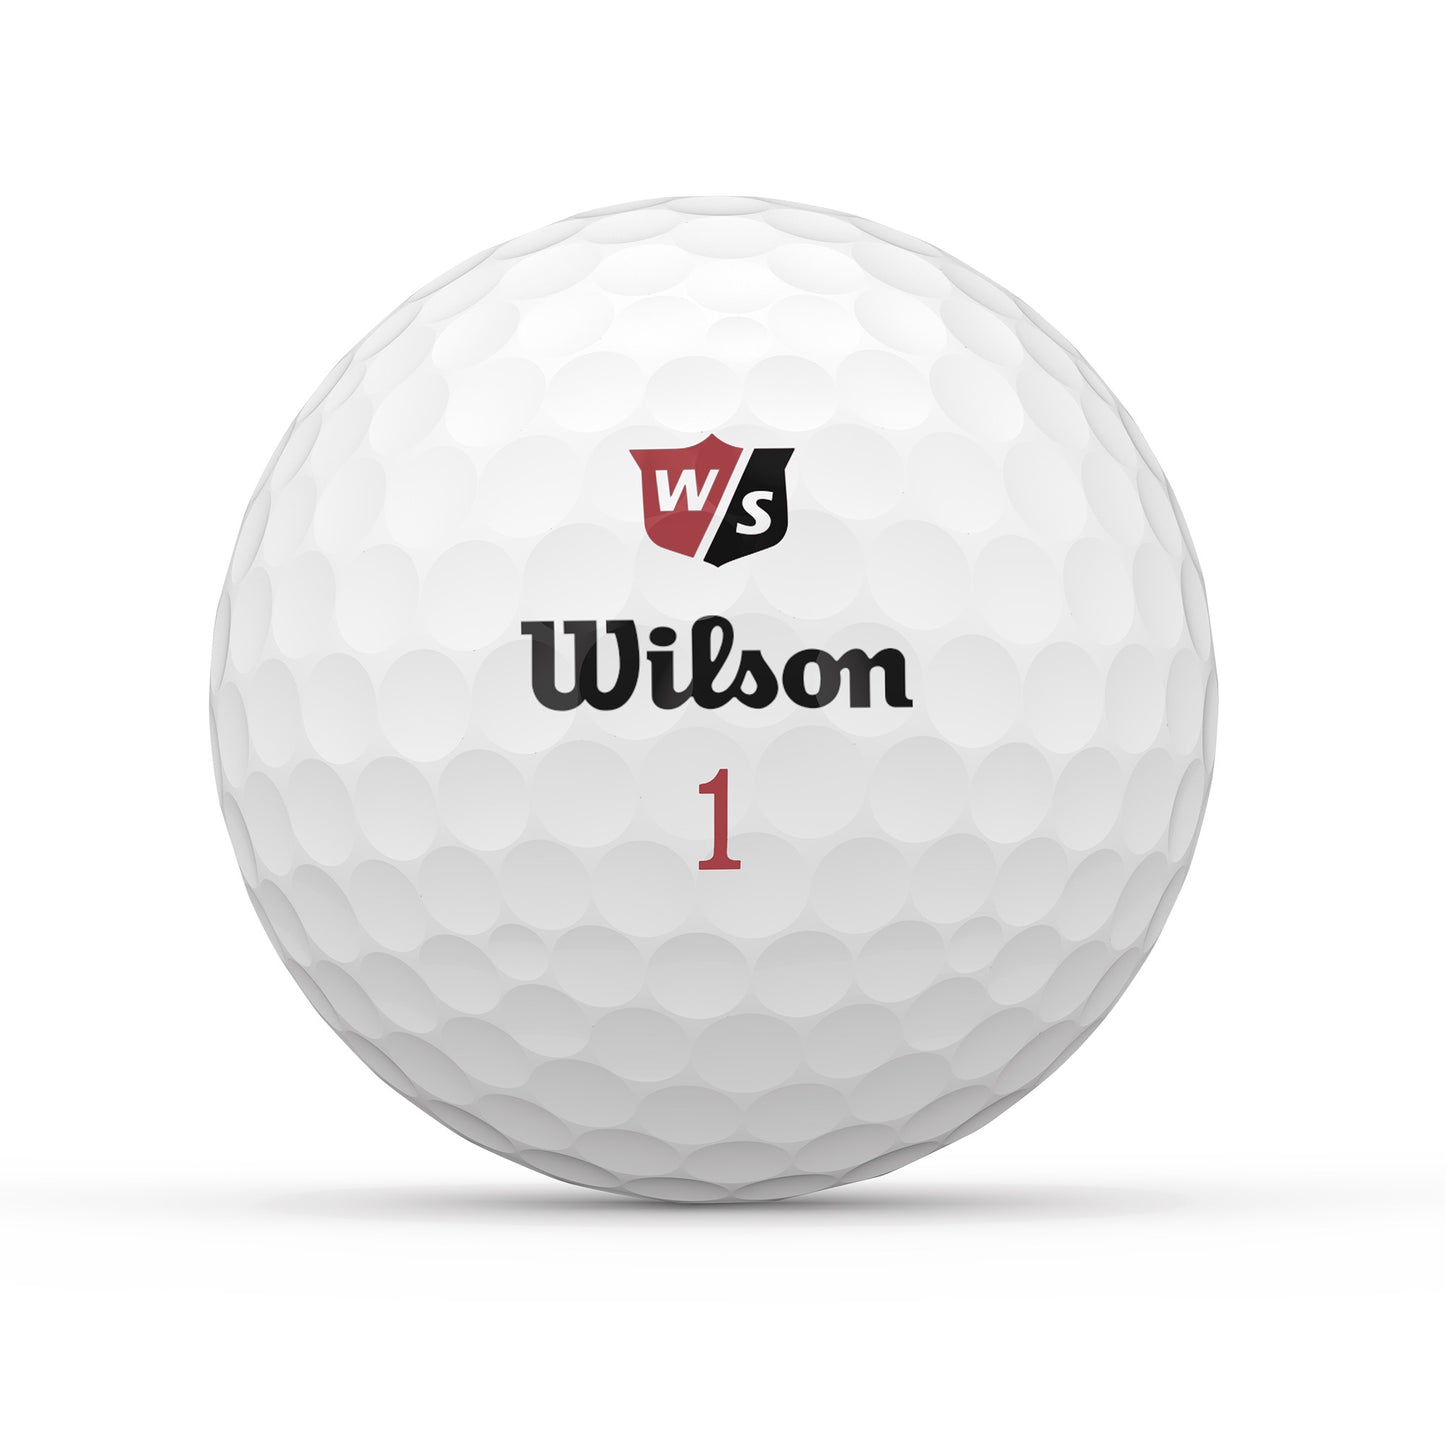 Wilson Ball - Duo Soft inkl. Logodruck (12 Dutzend = 144 Bälle)